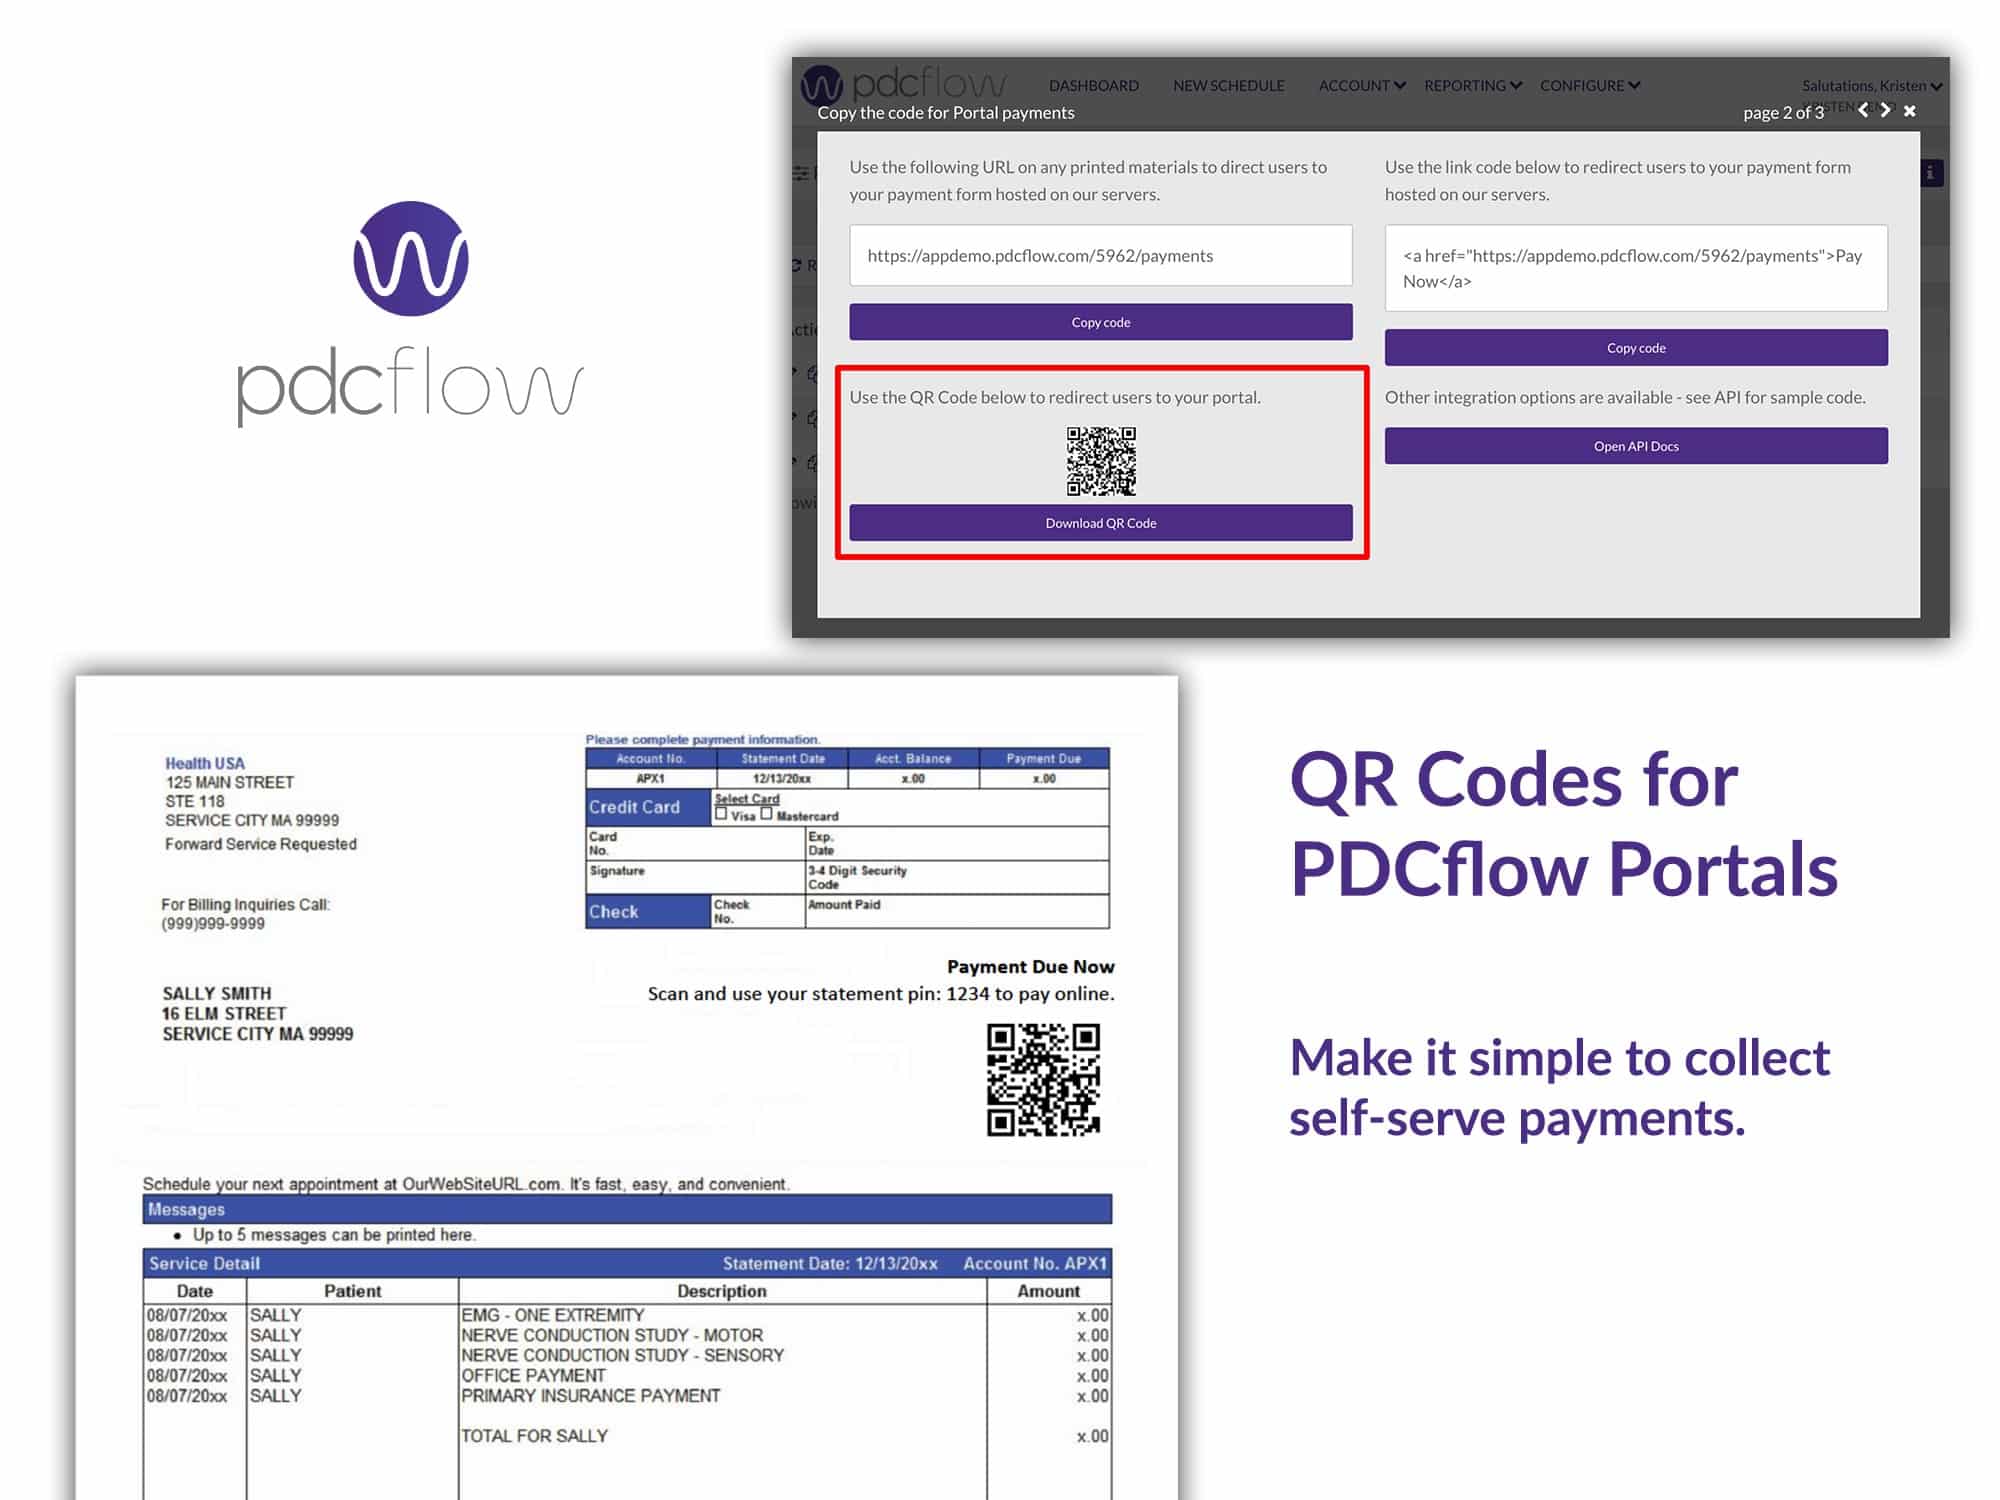 QR Codes for PDCflow Portals